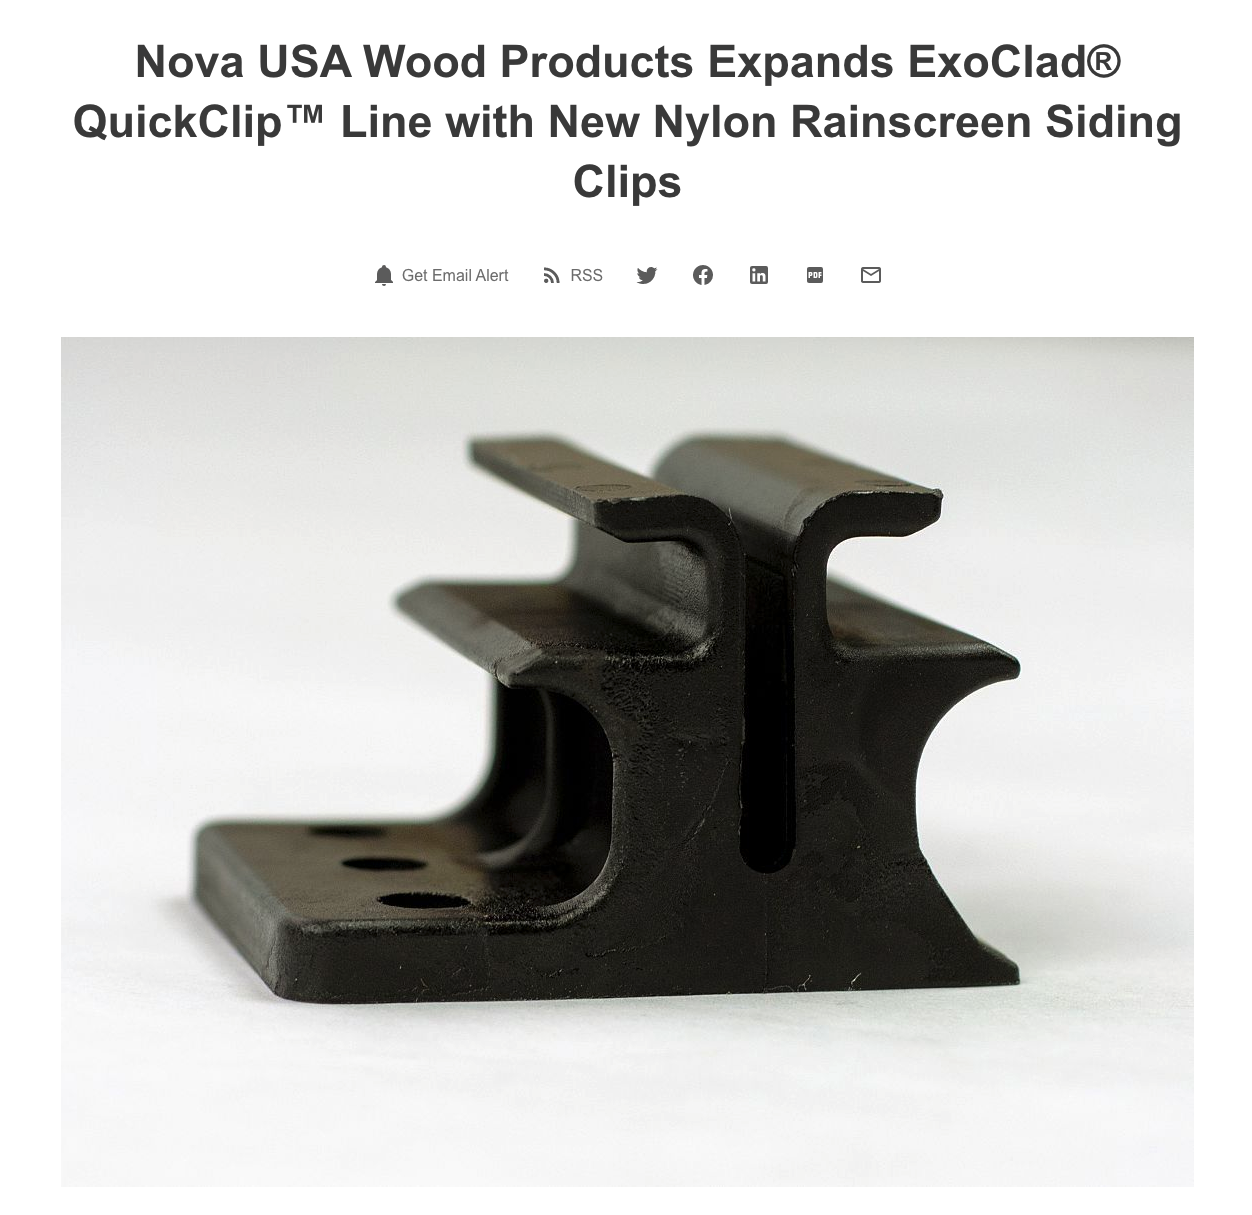 Nova Expands ExoClad QuickClip Product Line